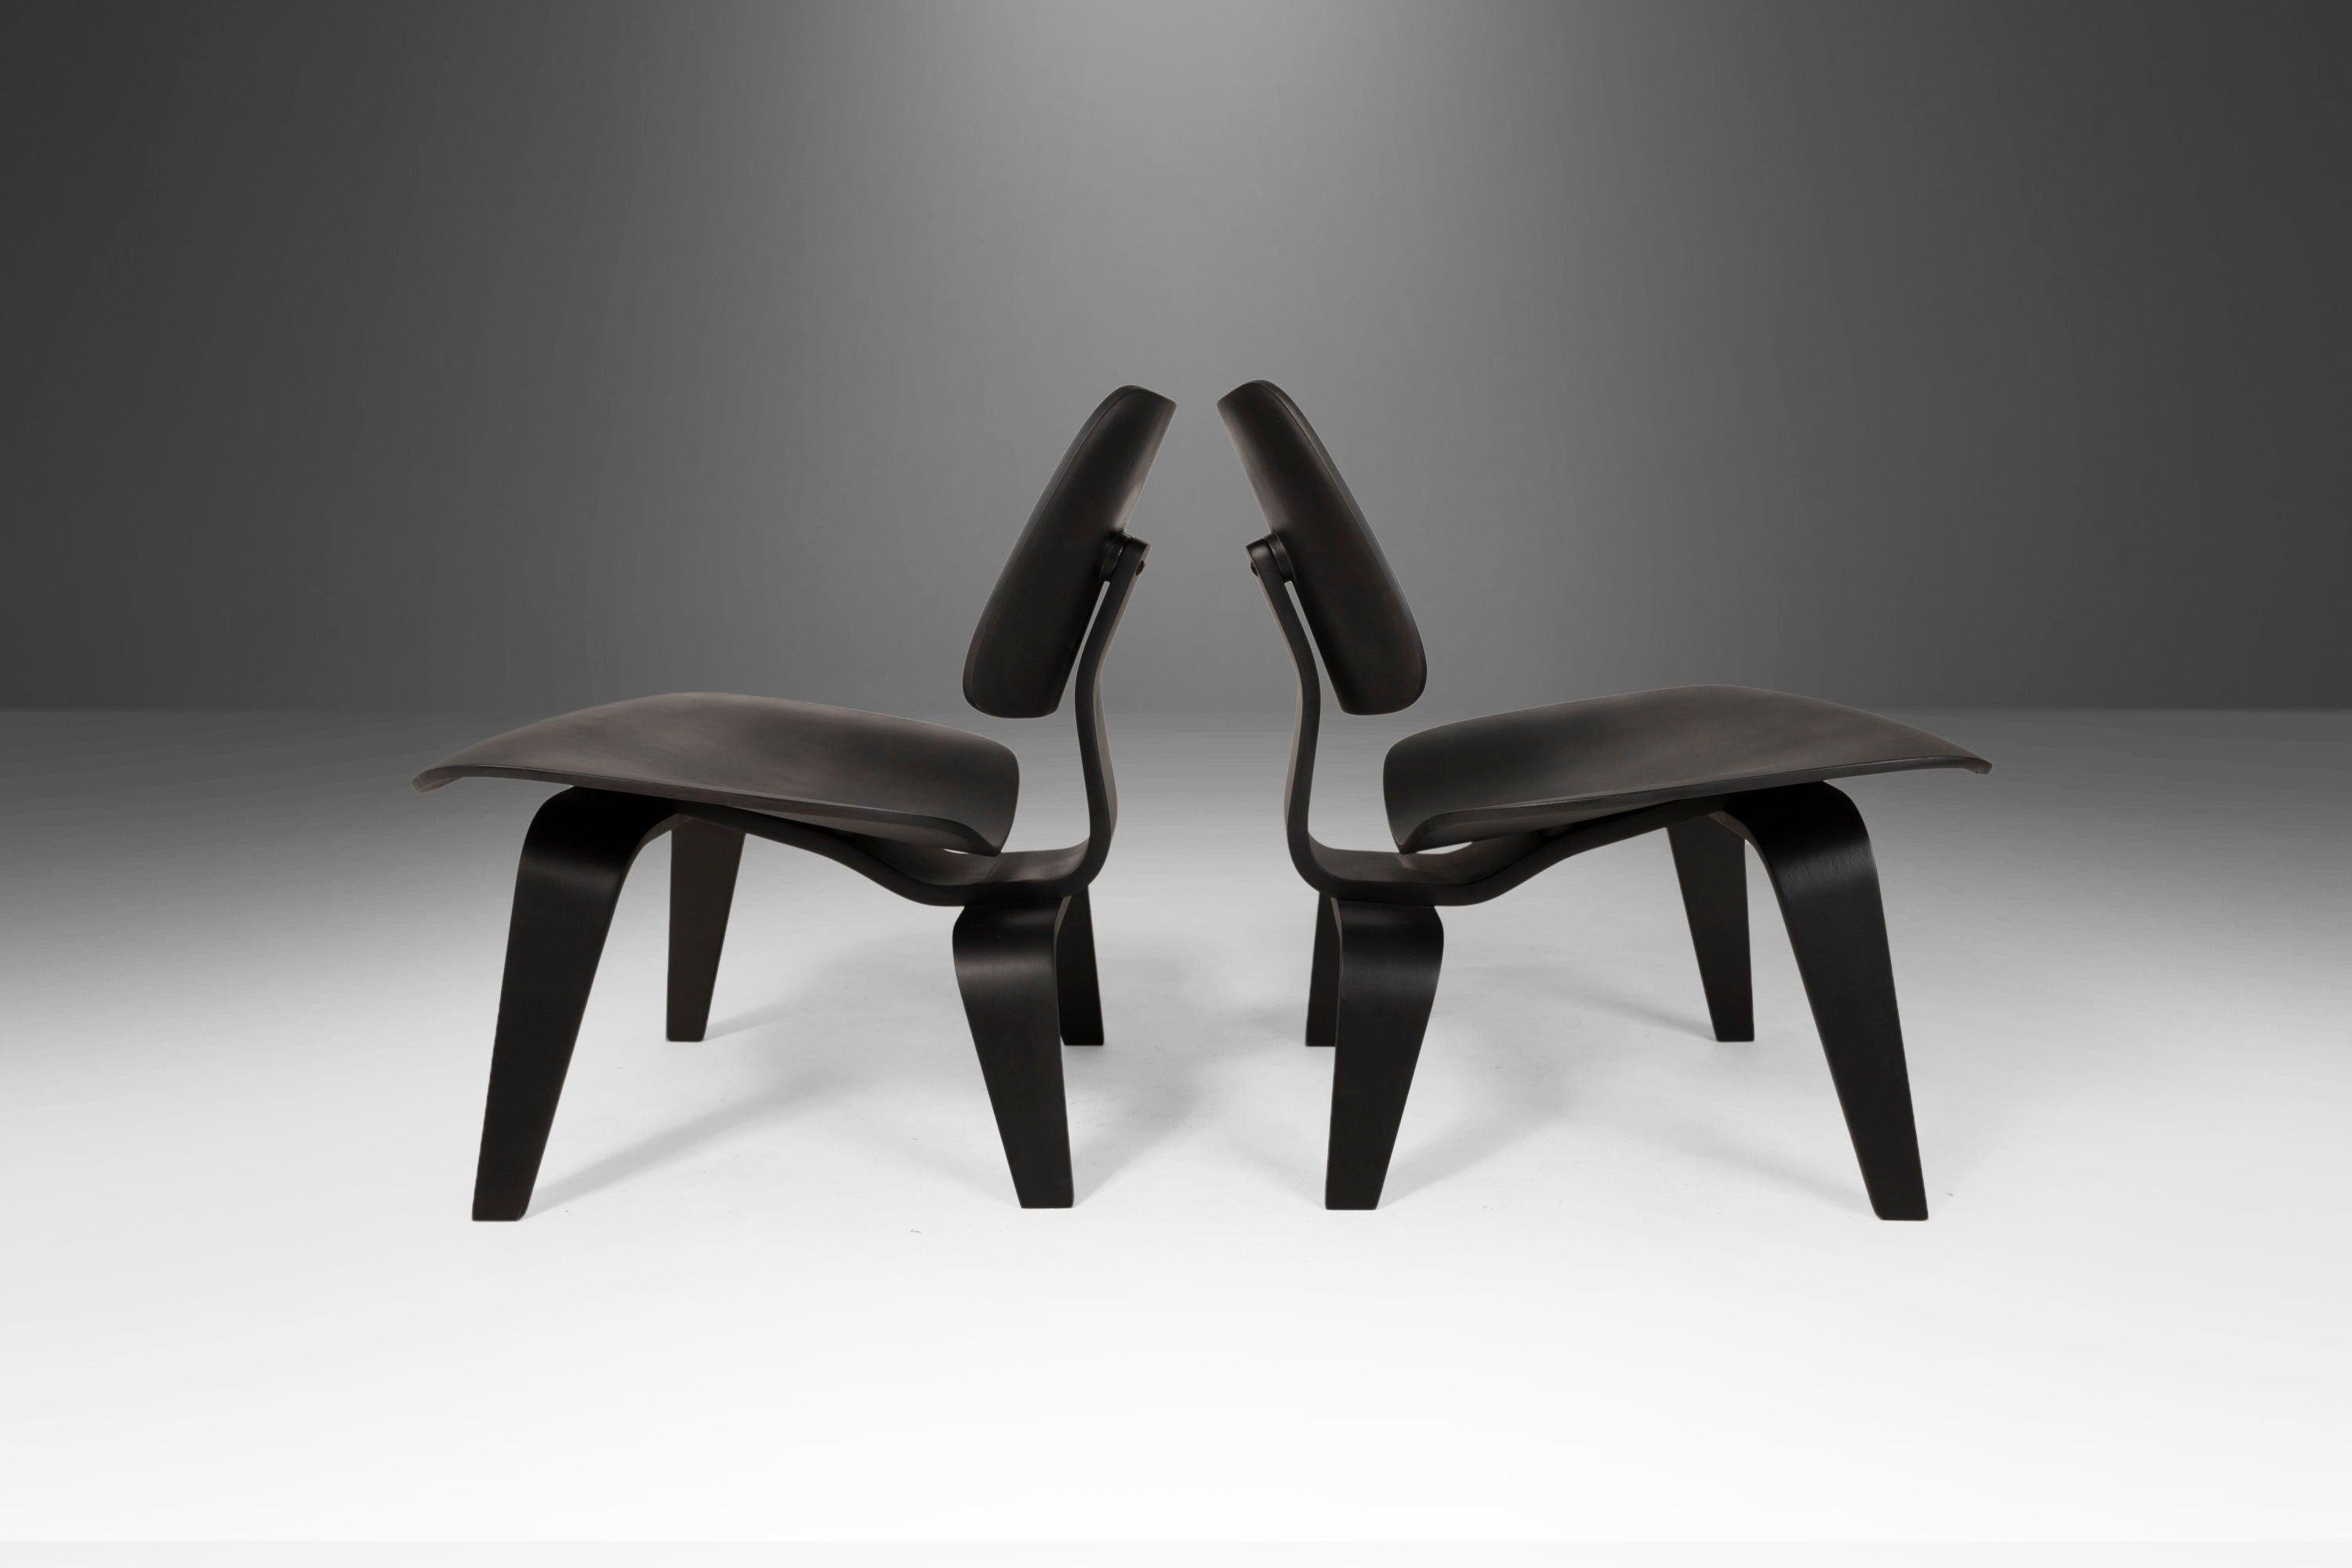 Stattlich, minimalistisch, aber keineswegs untertrieben. Dieses Paar LCW-Stühle von Charles und Ray Eames für Herman Miller aus den 90er Jahren wurde in mattschwarzer Ausführung neu aufgelegt und wird Ihnen als limitierte Sonderanfertigung von ABT